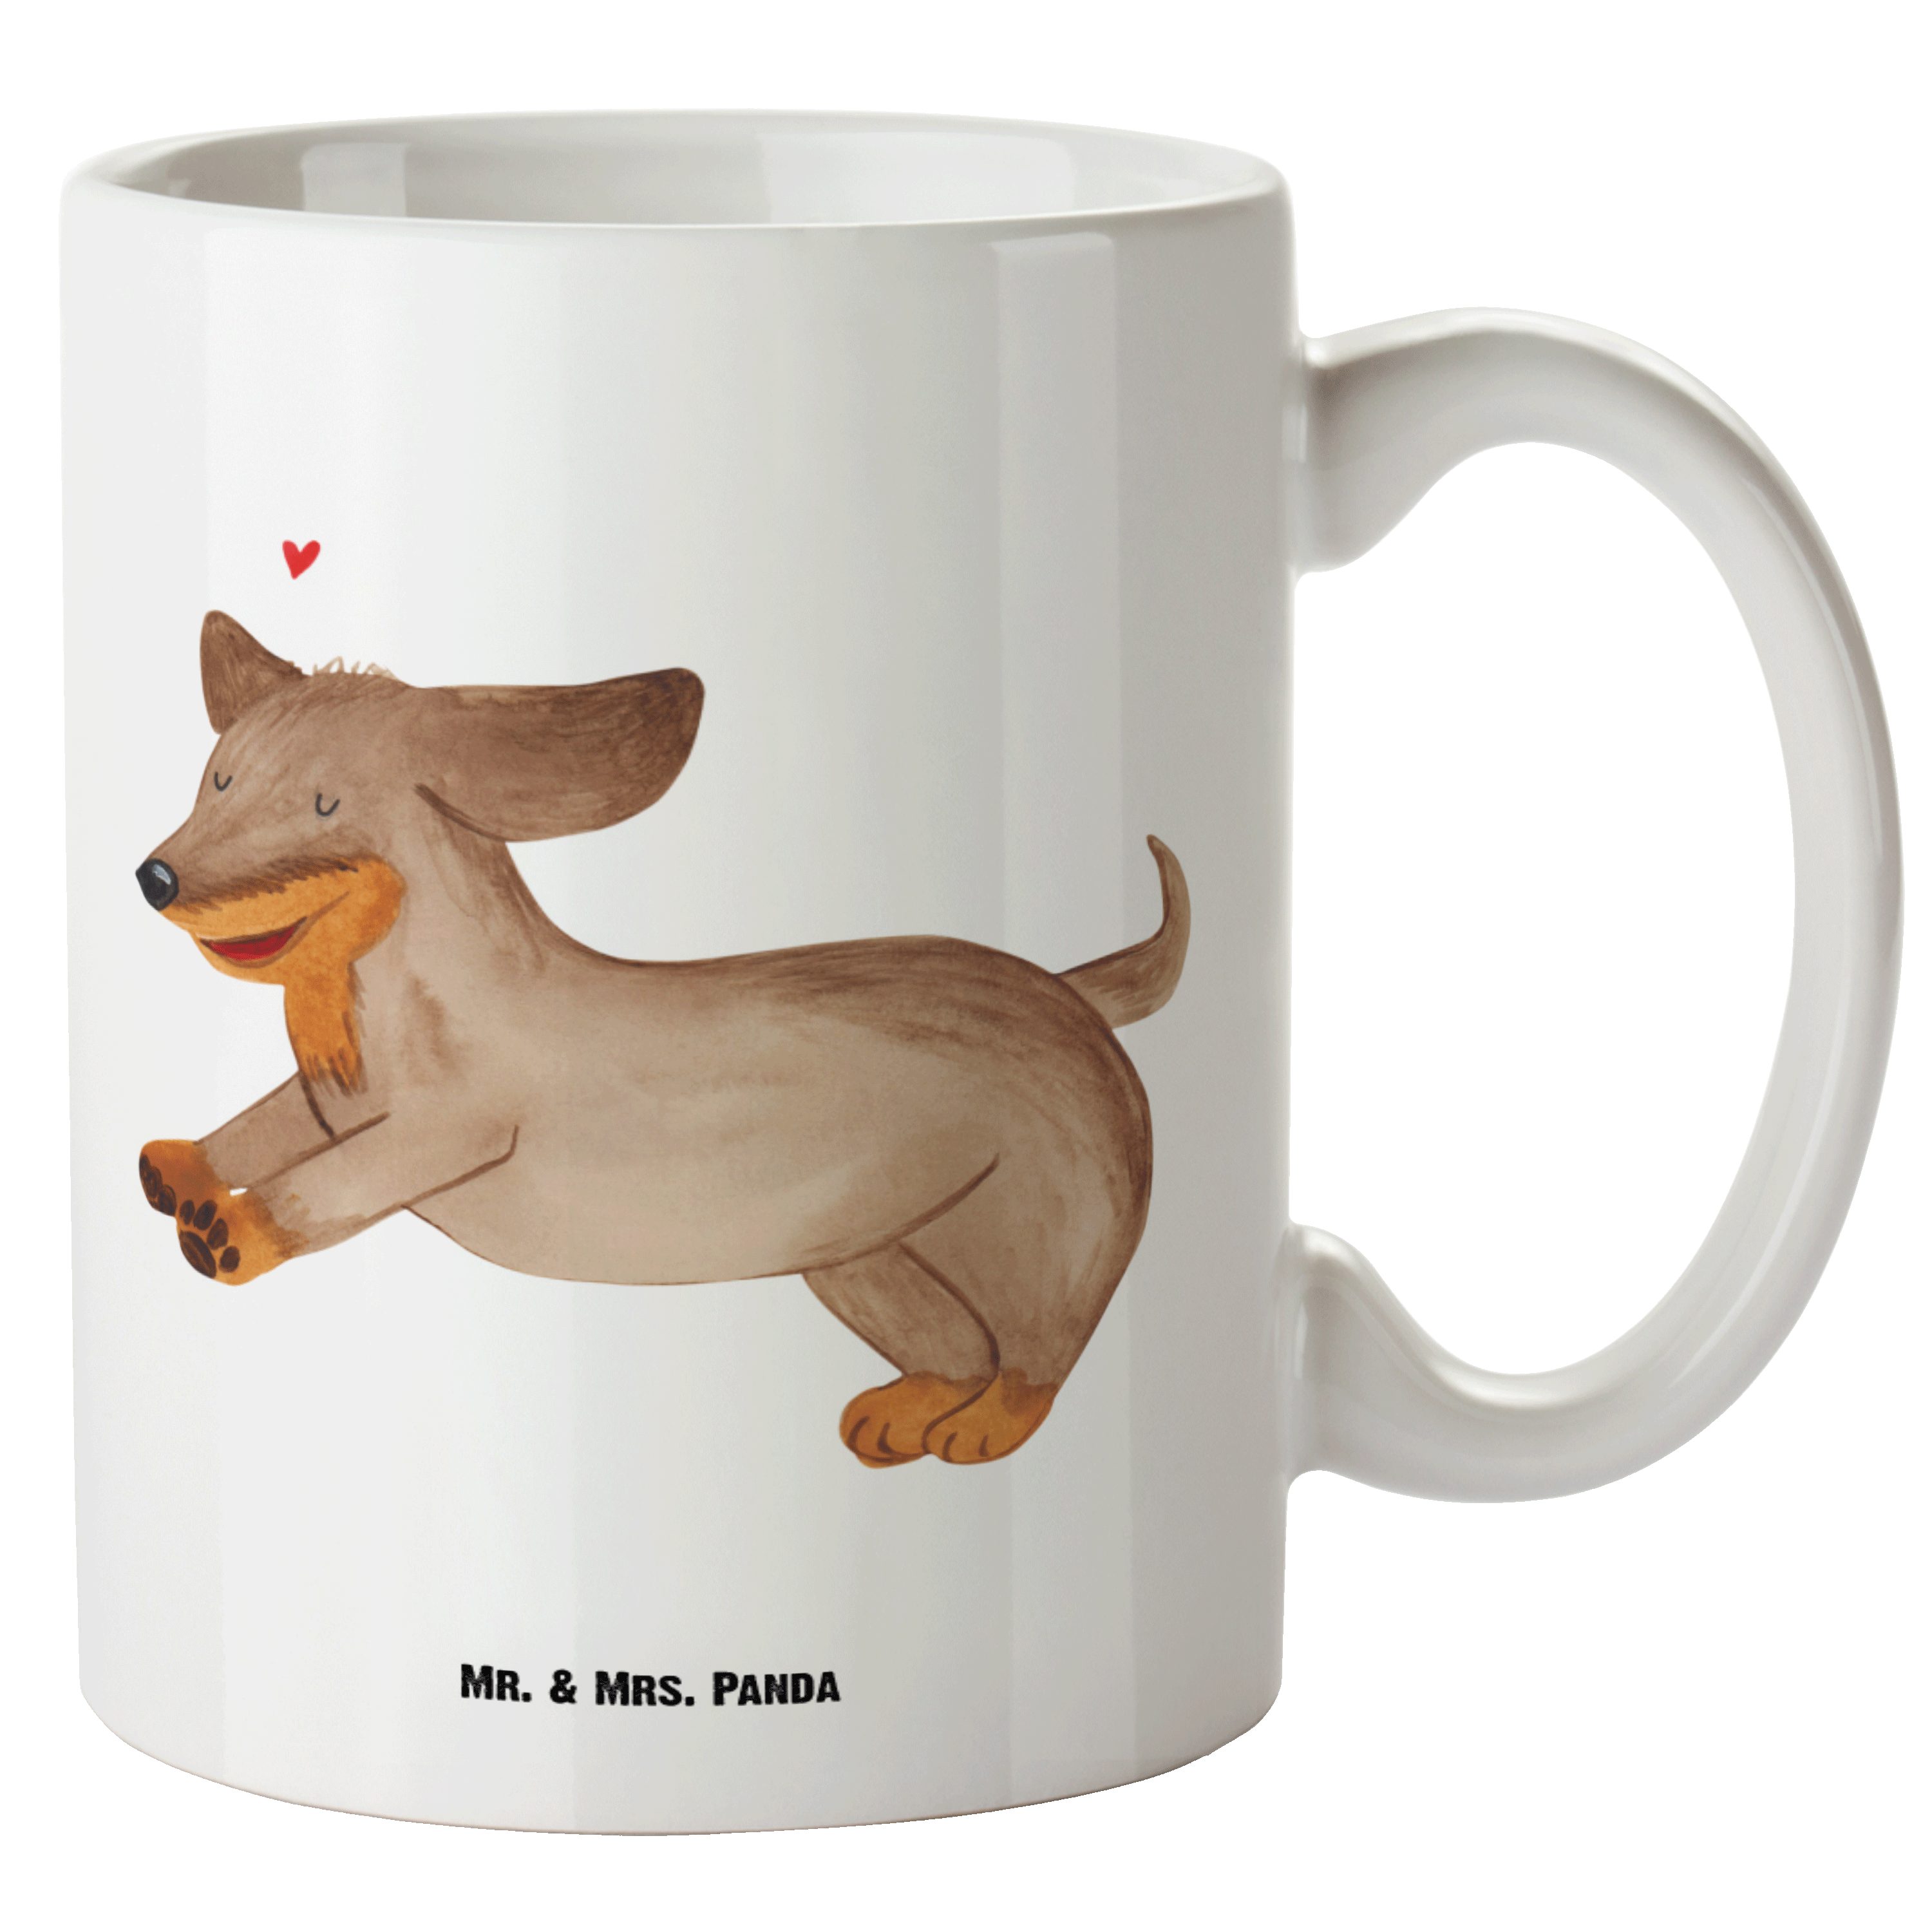 Mr. & Mrs. Panda Tasse Hund Dackel fröhlich - Weiß - Geschenk, happy dog, Hundeliebe, Dachsh, XL Tasse Keramik